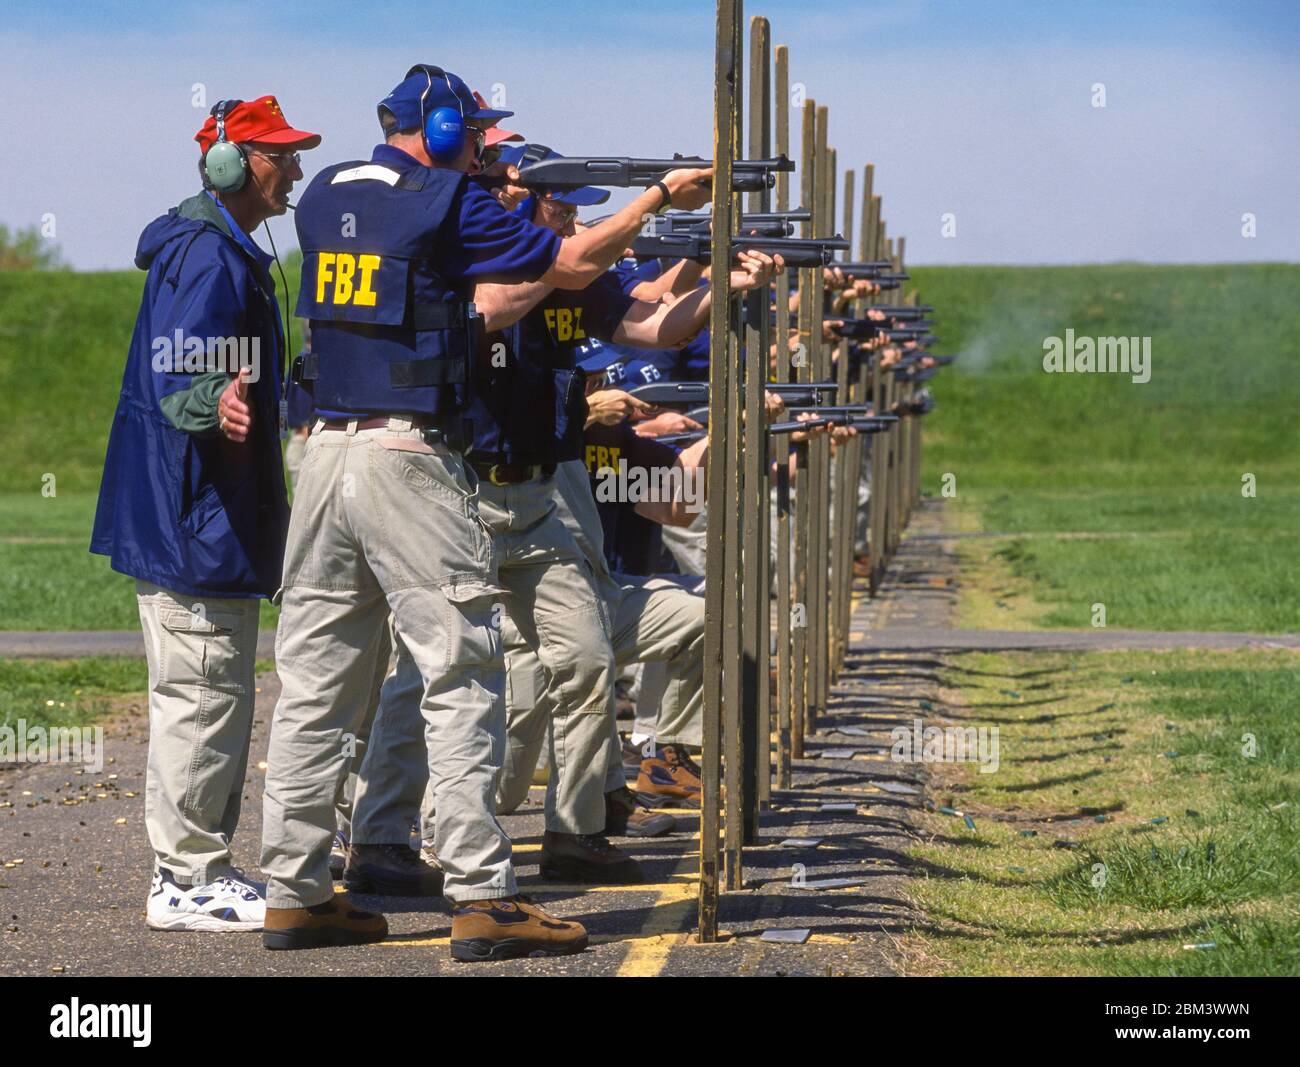 quantico-virginia-usa-april-27-1999-new-recruits-firearms-training-shotguns-fbi-academy-2BM3WWN.jpg